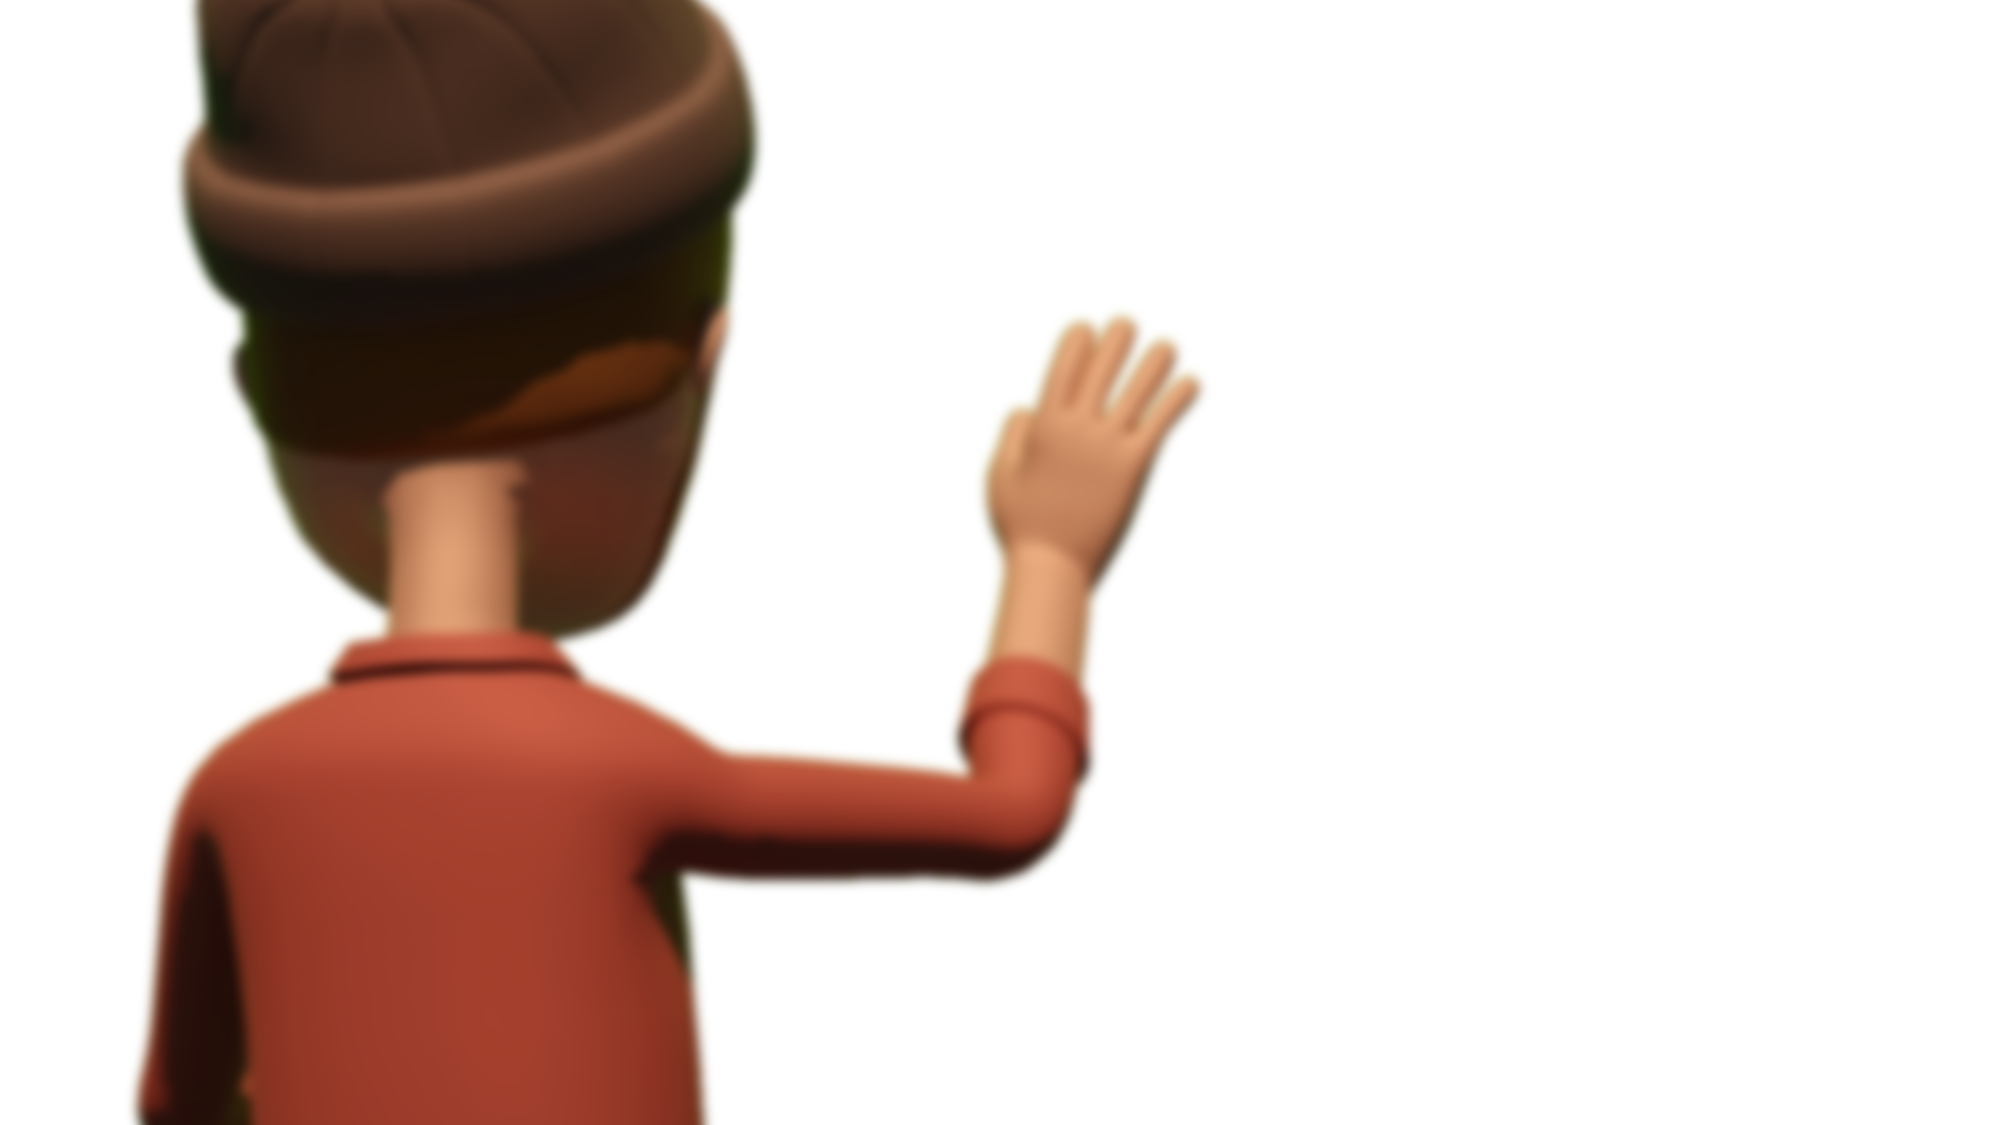 Personnage cartoon de dos faisant un signe de la main